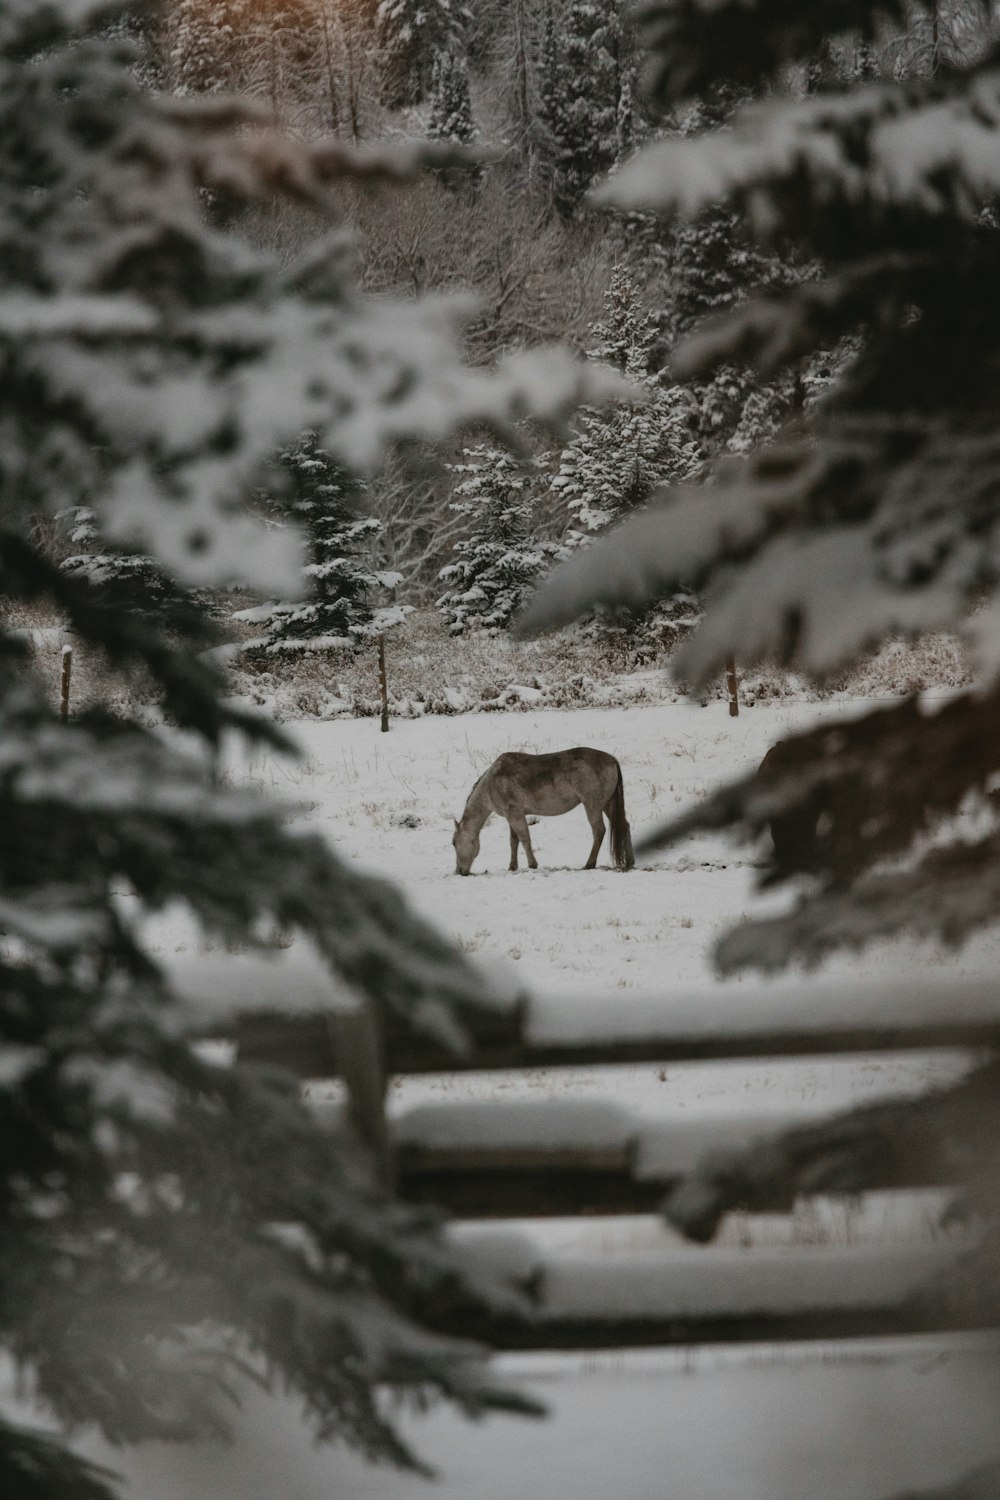 a deer in a snowy field